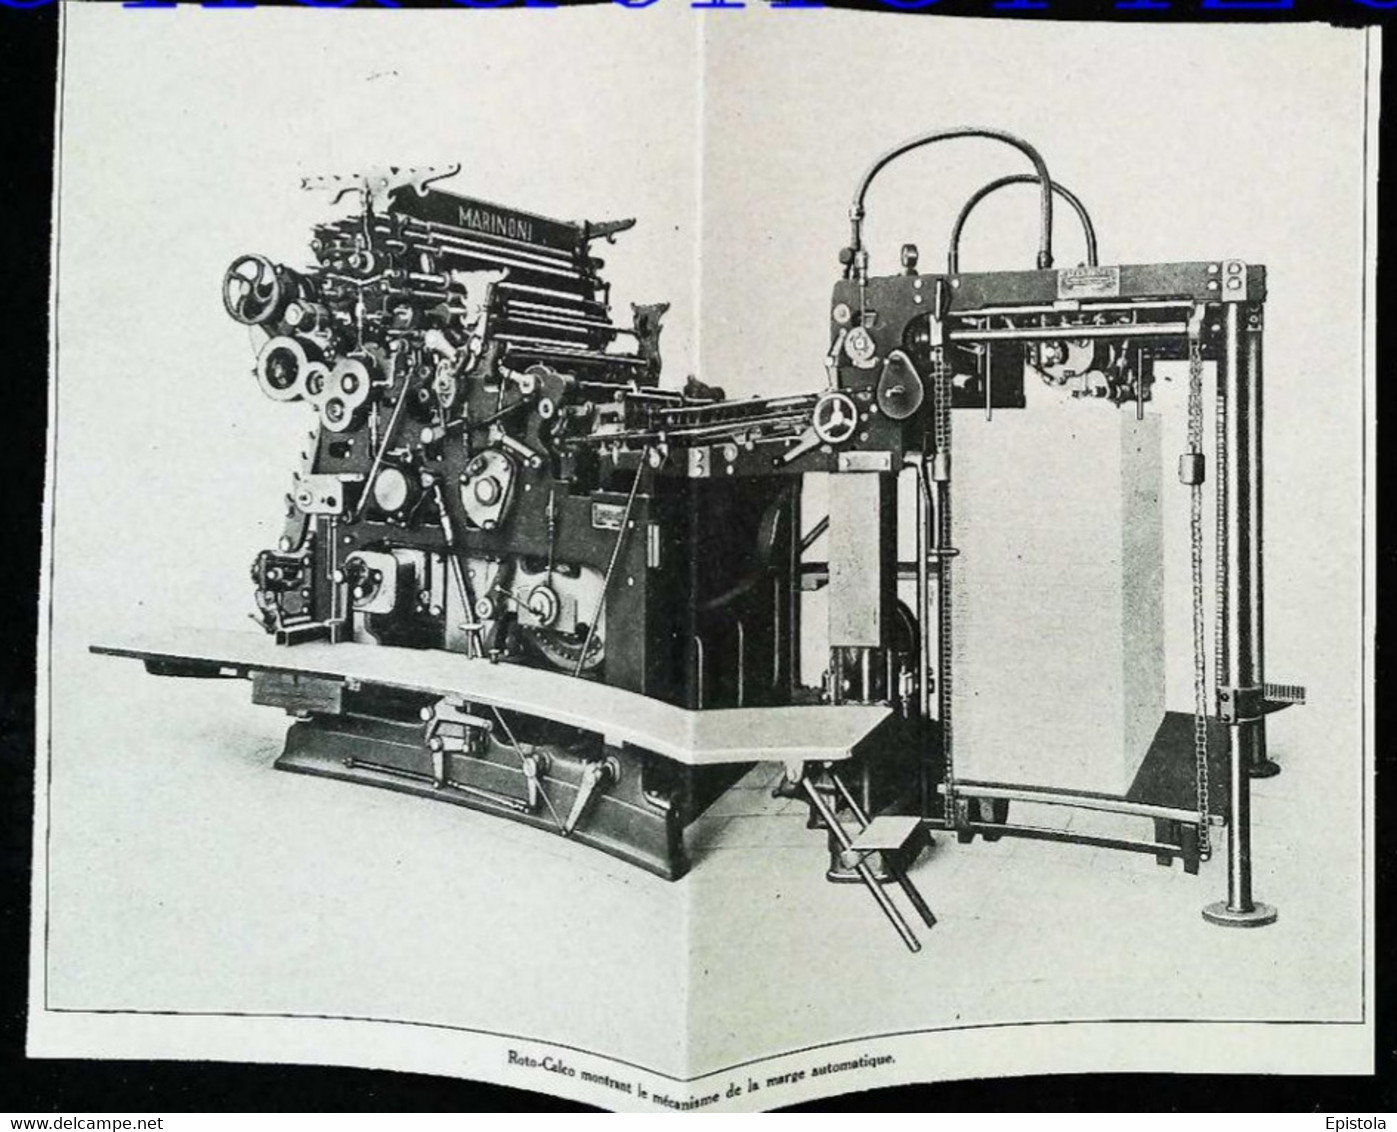 ► PRESSE Machine Roto-Calco MARINONI Imprimerie Italienne  - Coupure De Presse Originale Début XXe (Encadré Photo) - Machines